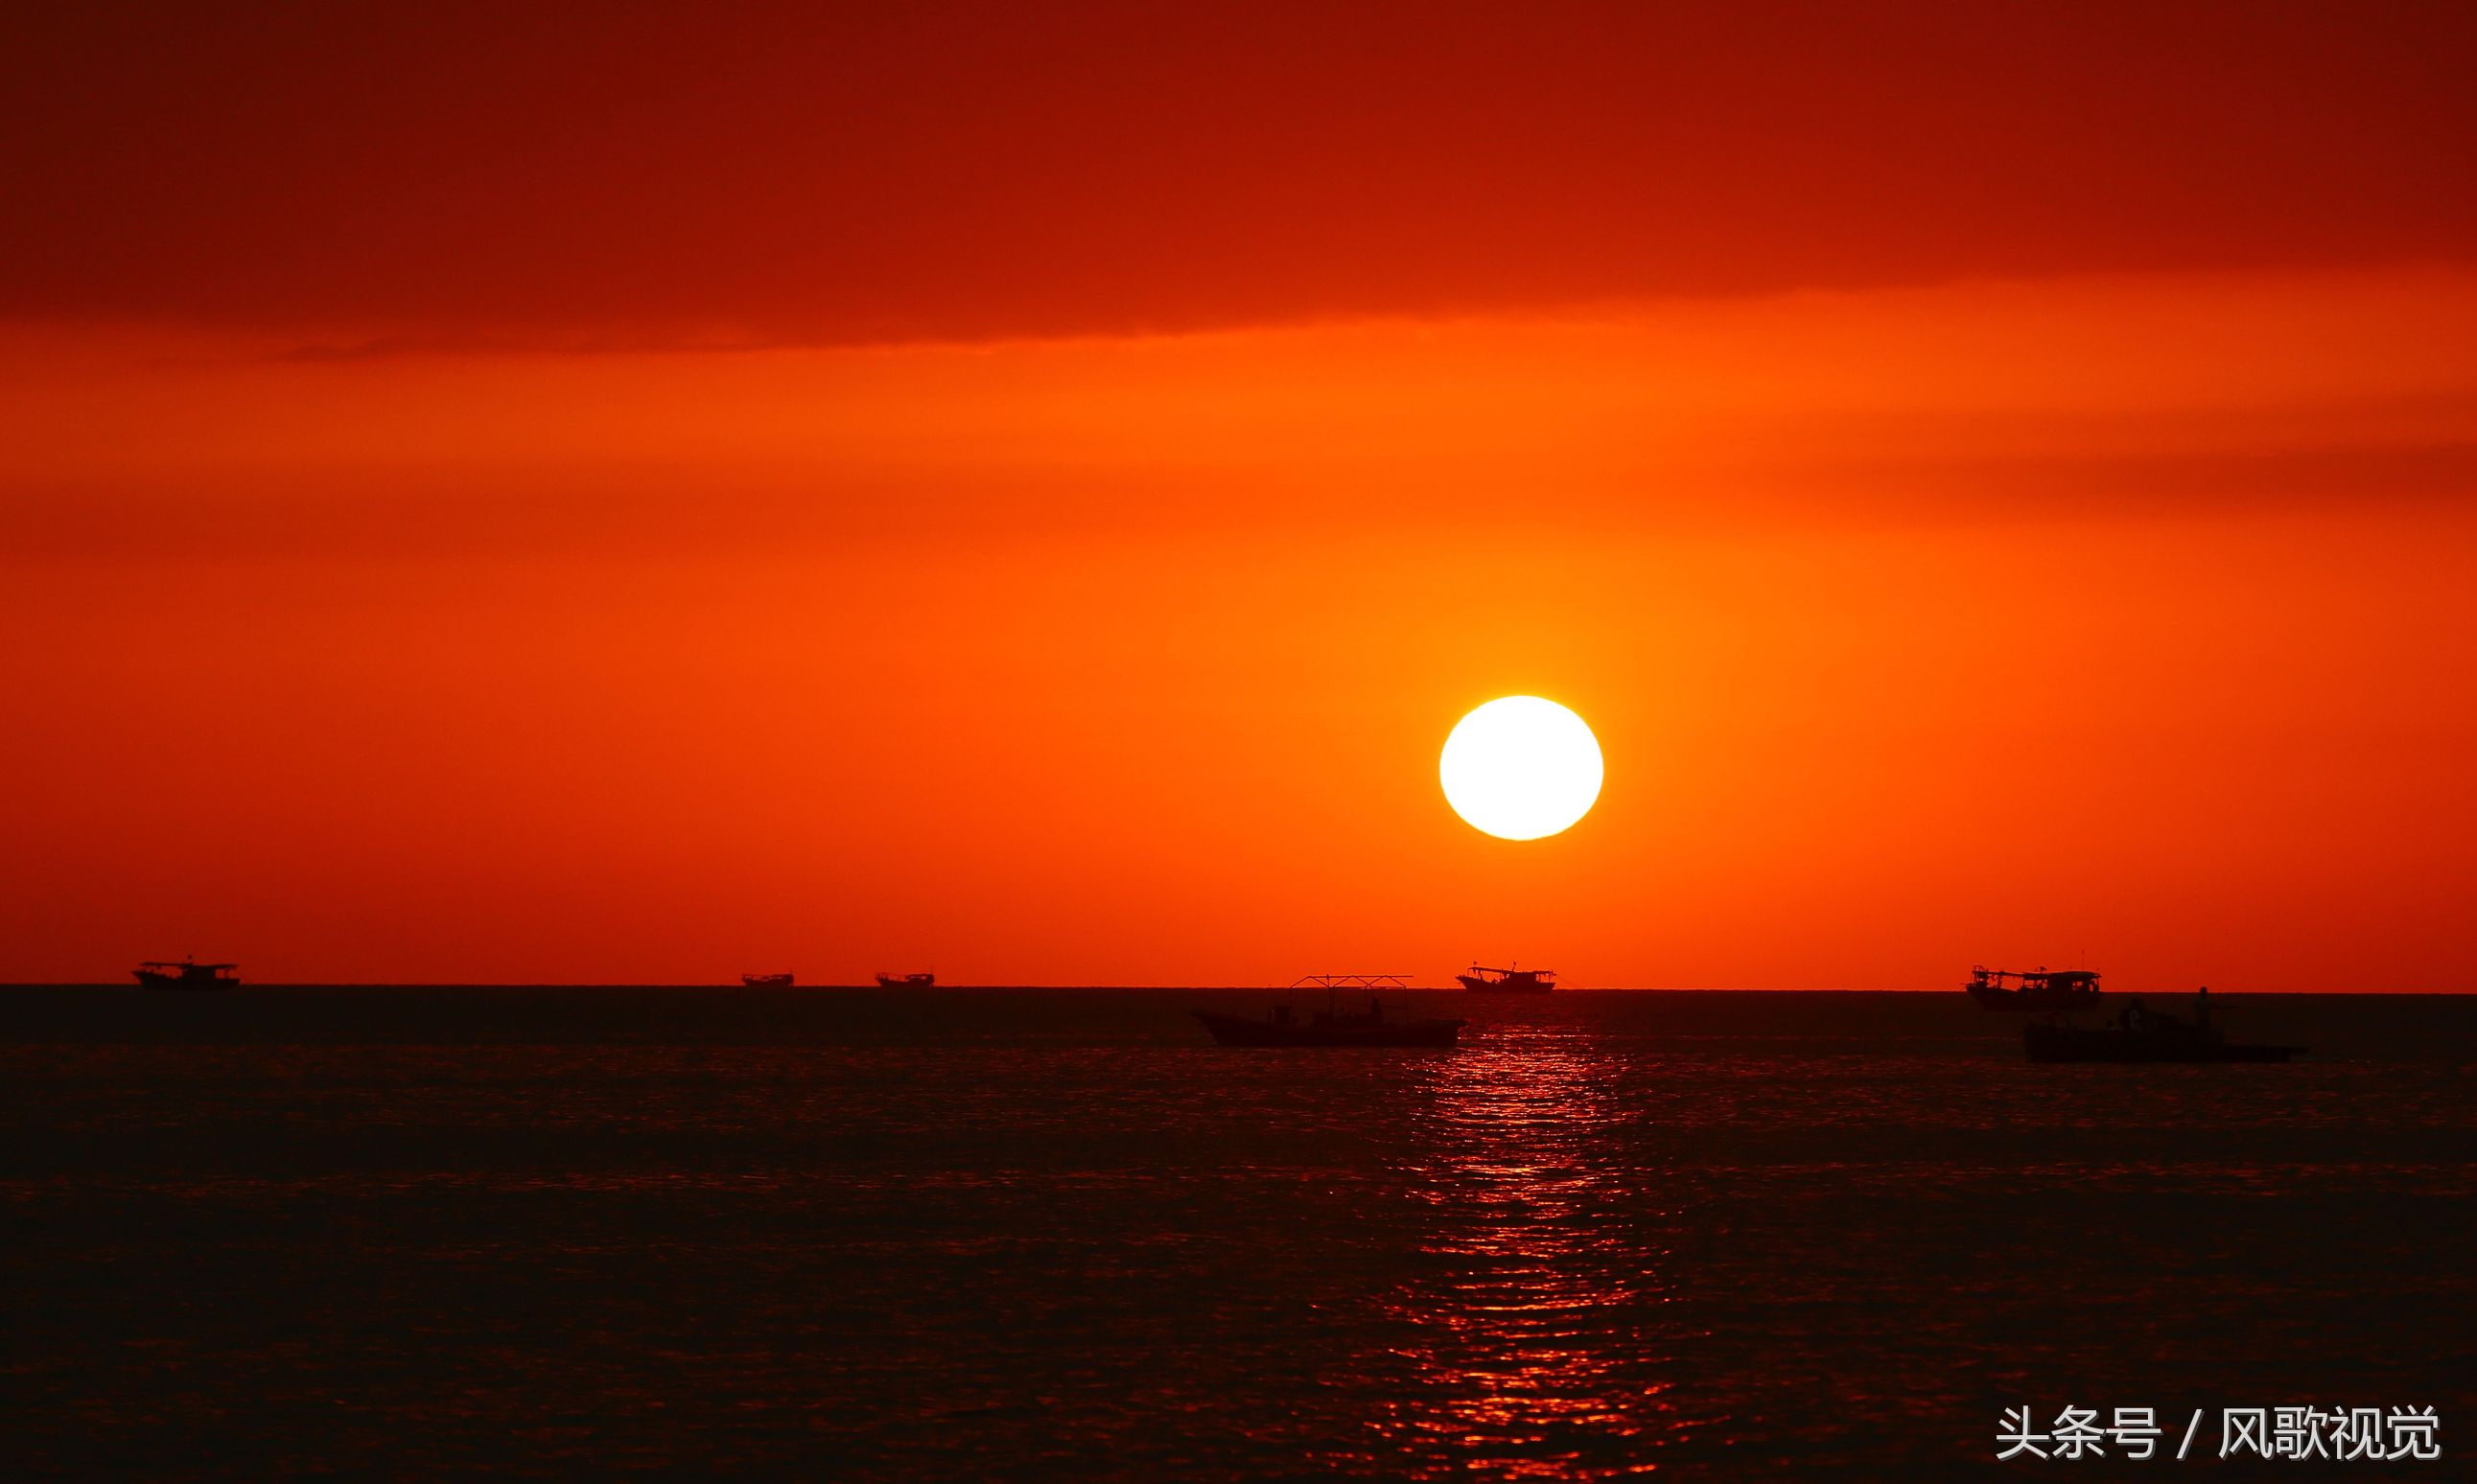 夕阳日落的照片 最美图片